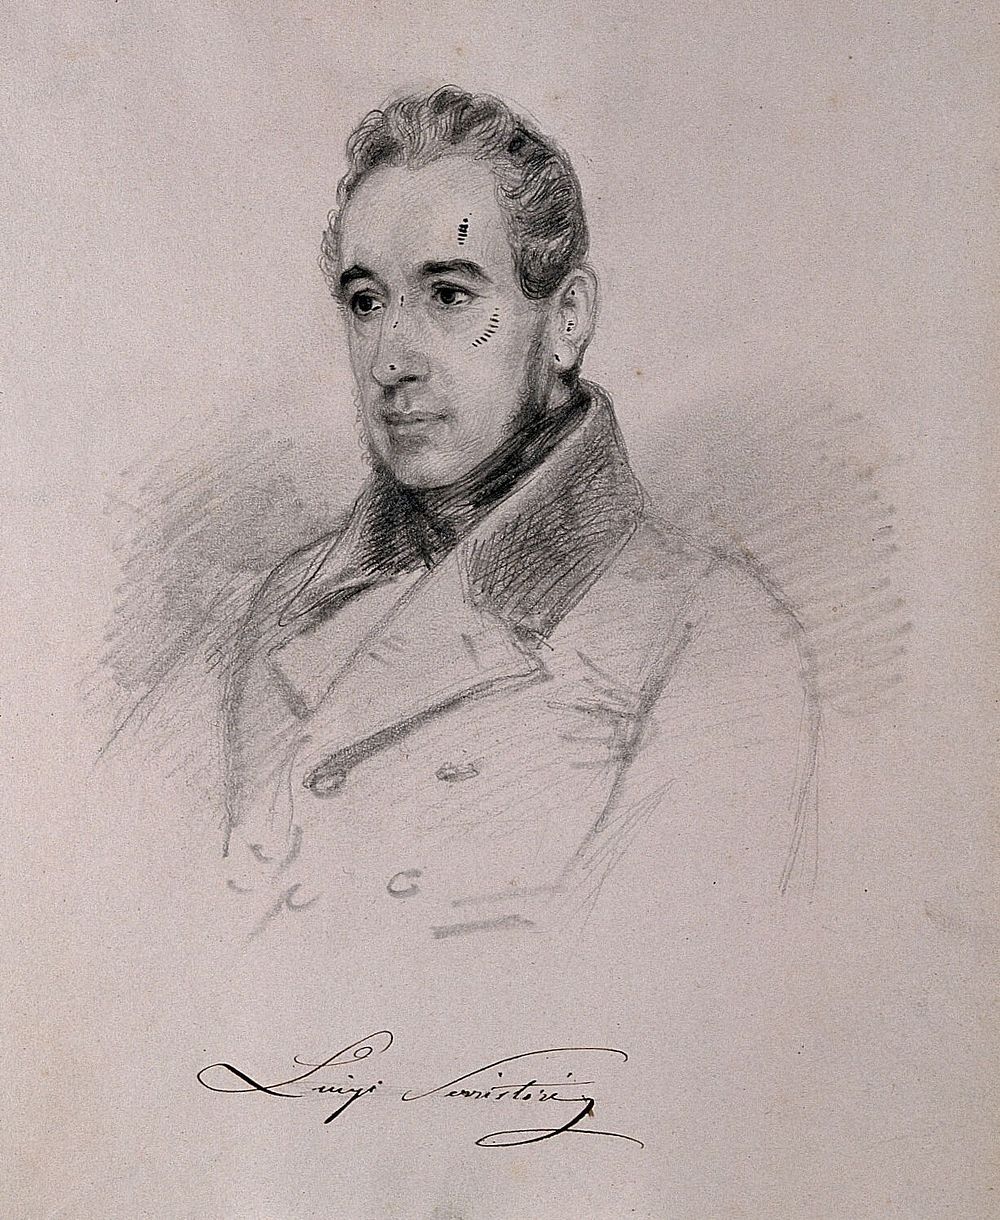 Luigi, Count Serristori. Pencil drawing by C. E. Liverati, 1841.